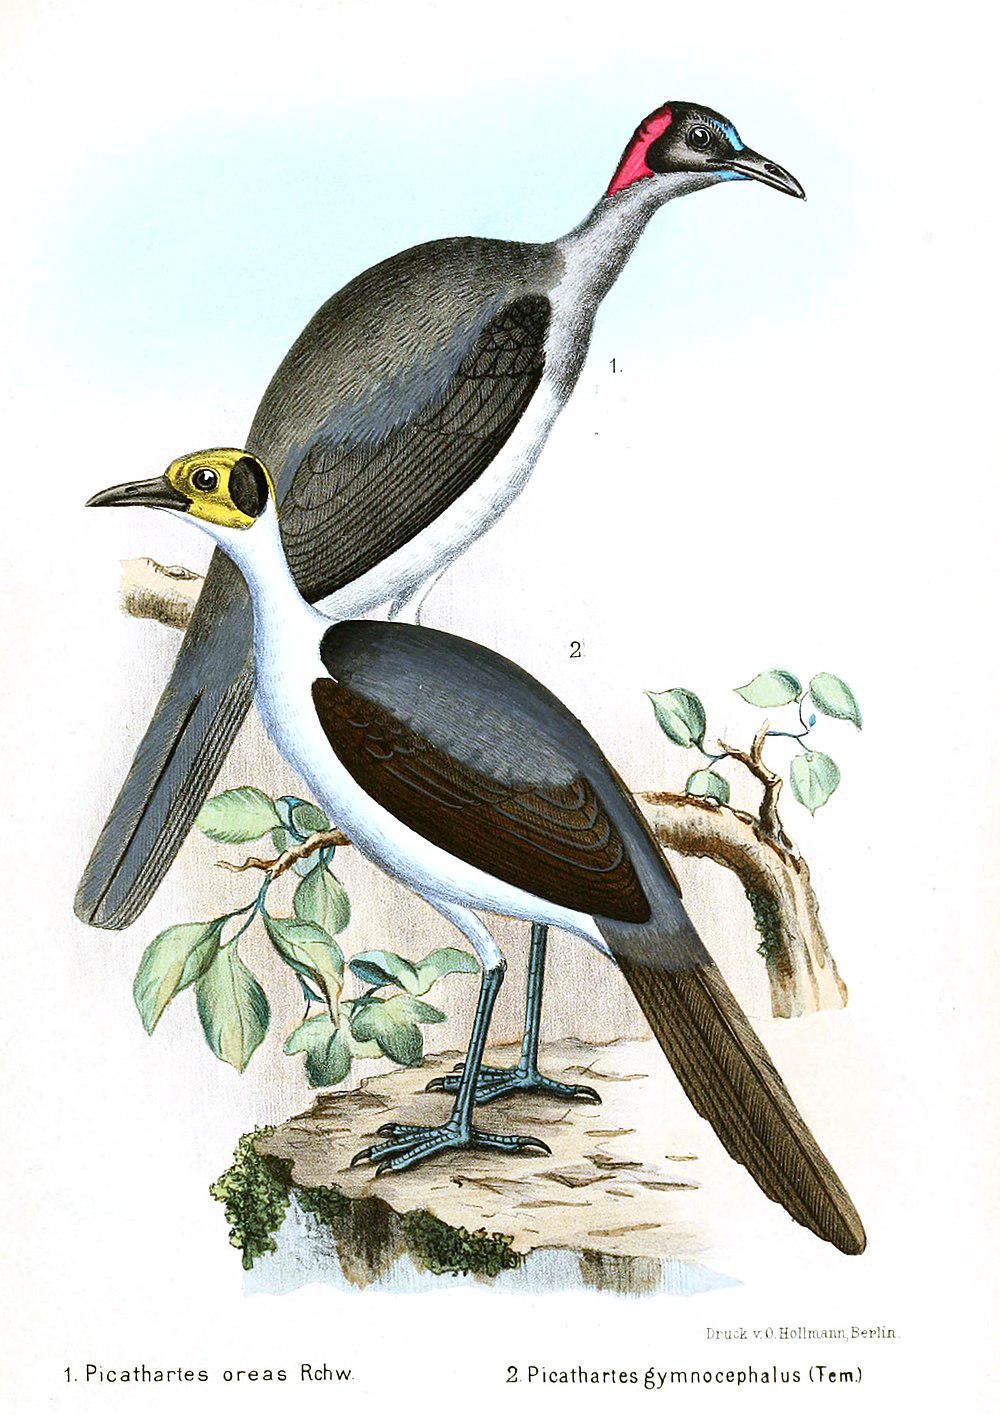 灰颈岩鹛 / Grey-necked Rockfowl / Picathartes oreas